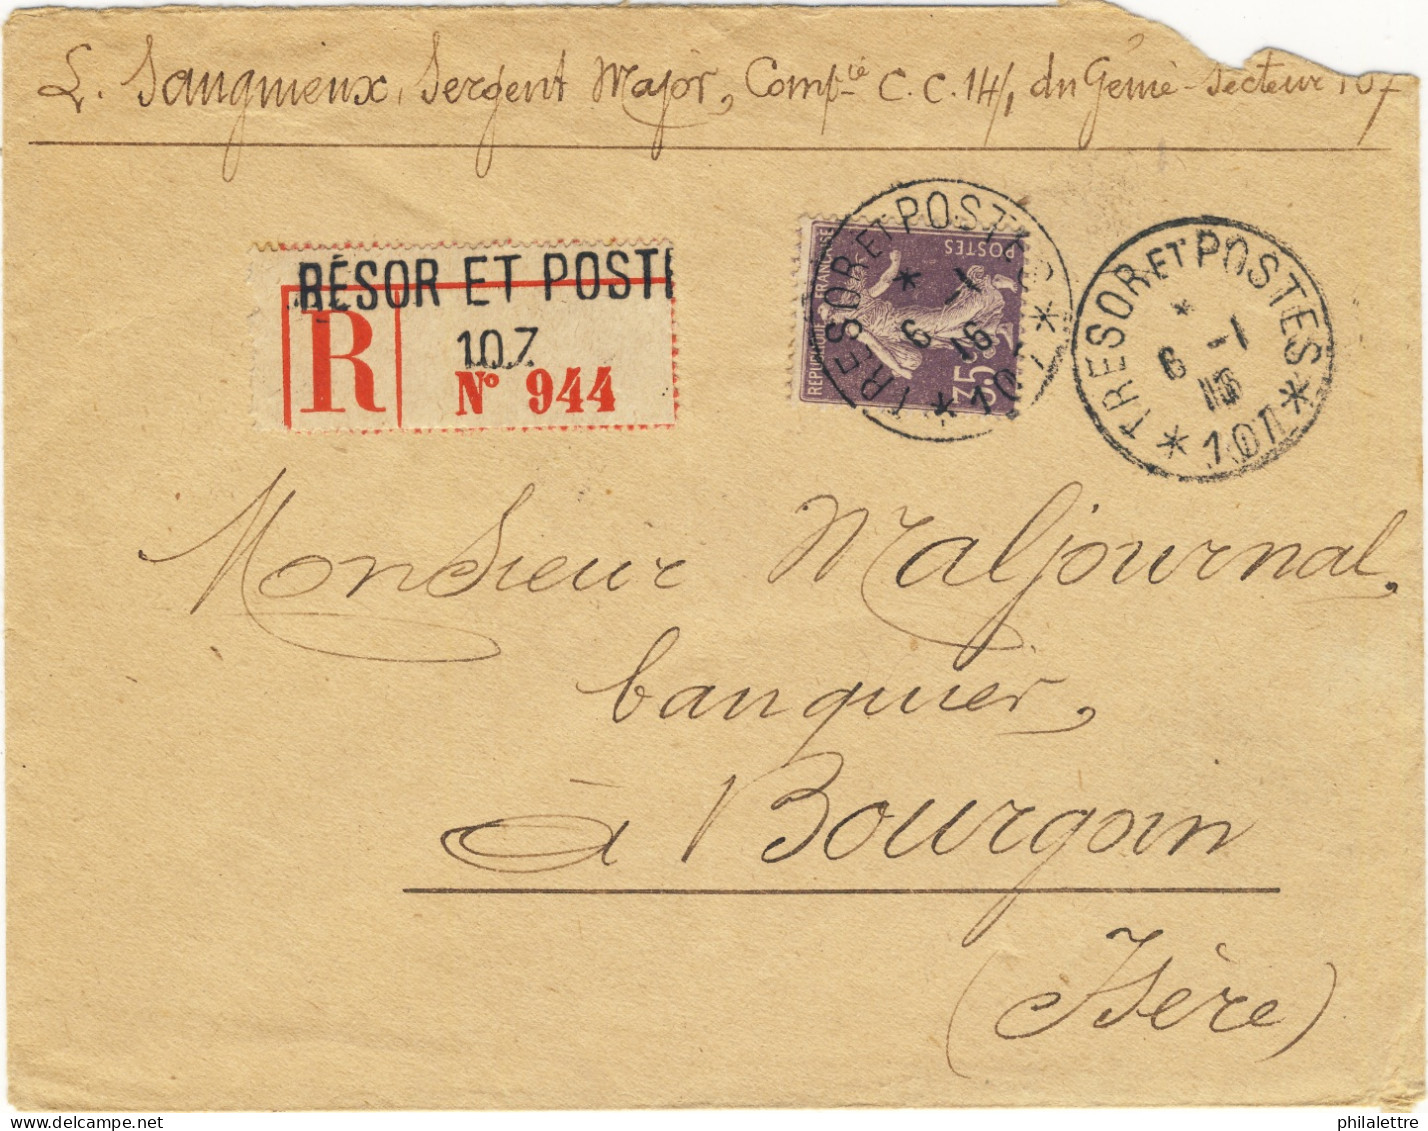 FRANCE - 1915 - LAC Recommandée Affranchie Yv.136 35c Chiffres Maigres Usage Tardif Du Secteur Postal 107 Pour Bourgoin - 1. Weltkrieg 1914-1918